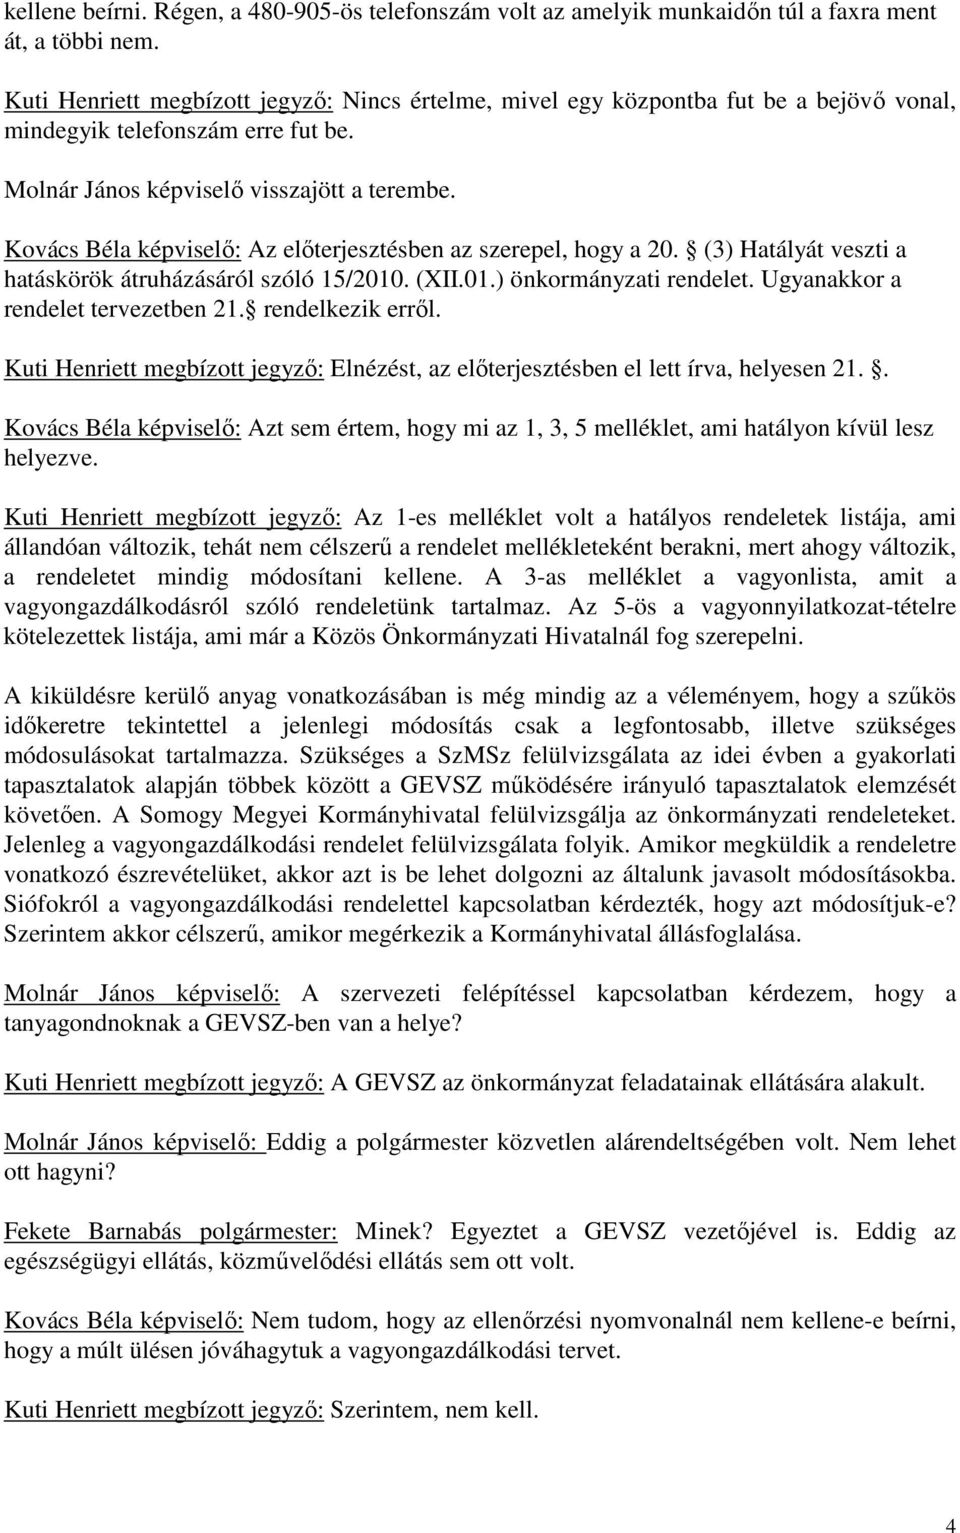 Kovács Béla : Az előterjesztésben az szerepel, hogy a 20. (3) Hatályát veszti a hatáskörök átruházásáról szóló 15/2010. (XII.01.) önkormányzati rendelet. Ugyanakkor a rendelet tervezetben 21.